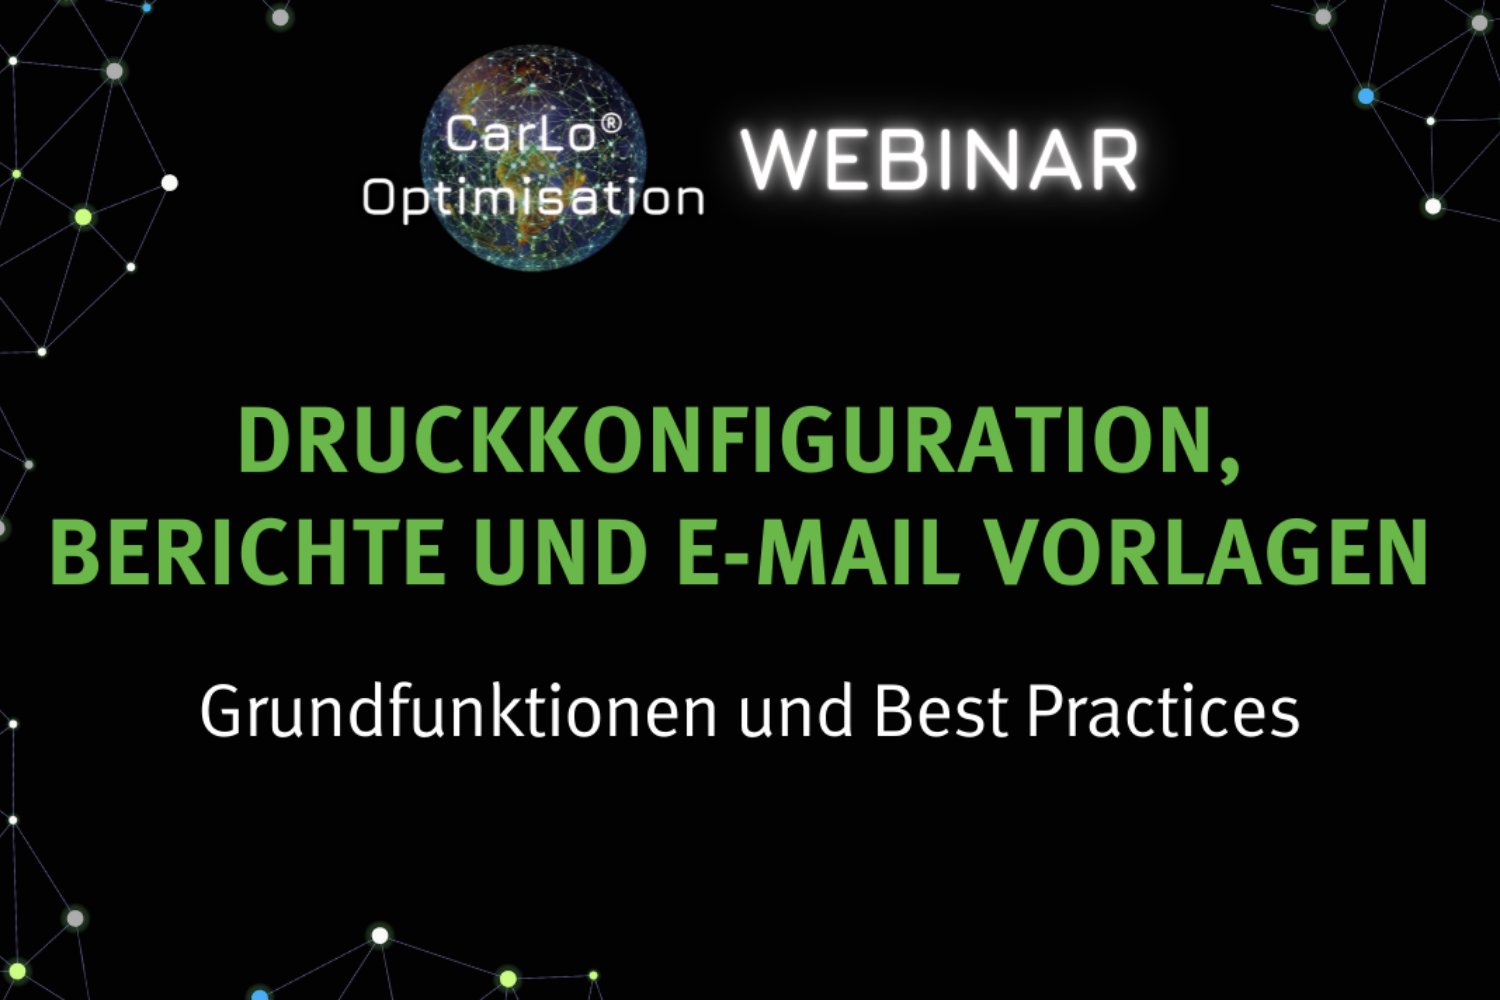 CarLo Optimisation Webinar: Druckkonfiguration, Berichte und E-Mail Vorlagen